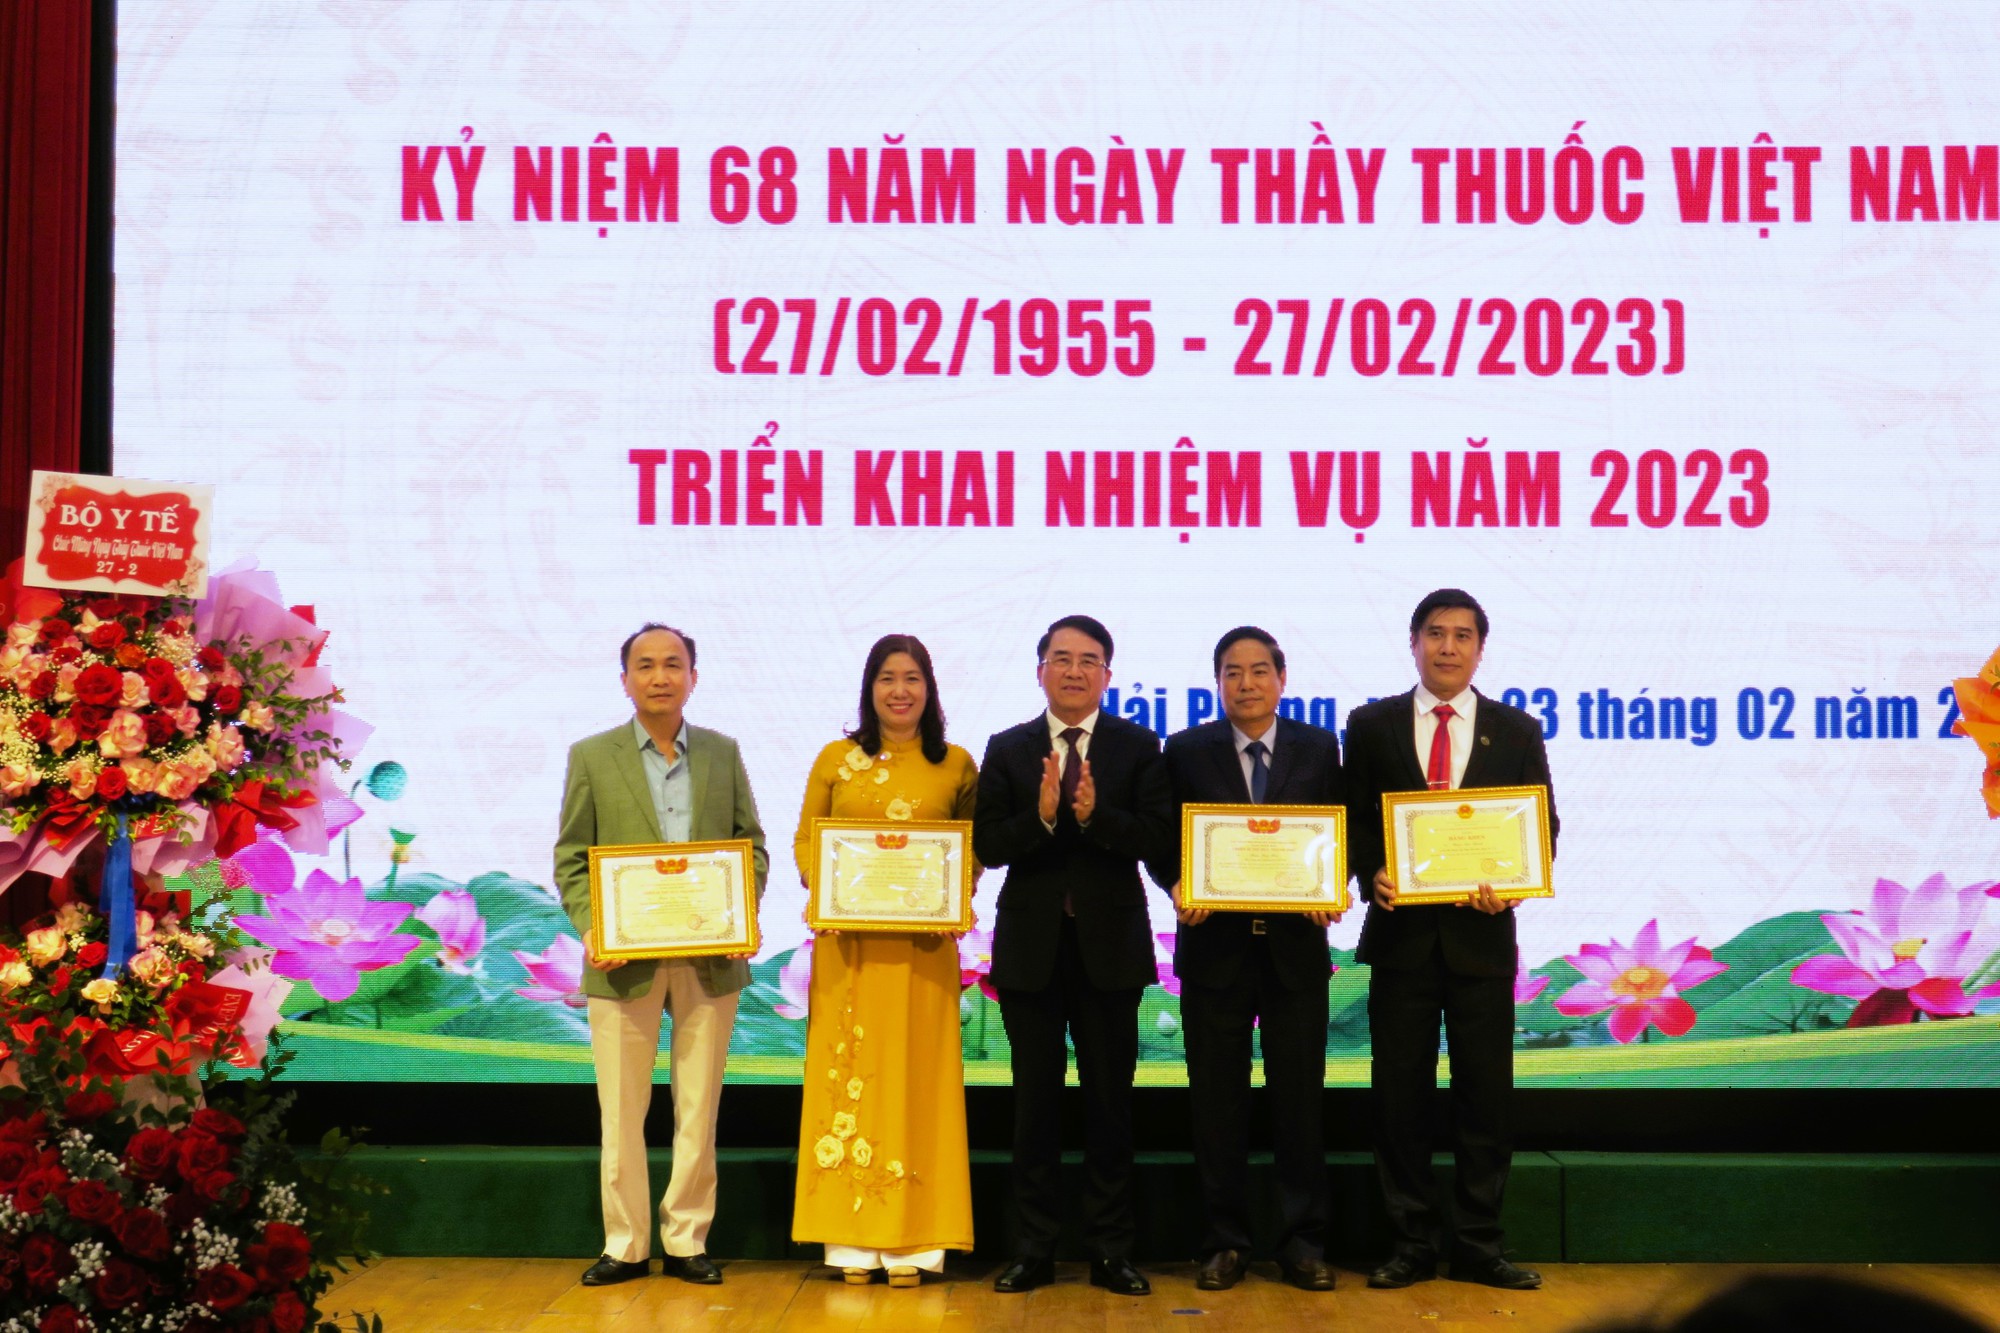 Kỷ niệm 68 năm Ngày Thầy thuốc Việt Nam: Sở Y tế Hải Phòng nhận Cờ dẫn đầu phong trào thi đua yêu nước  - Ảnh 5.